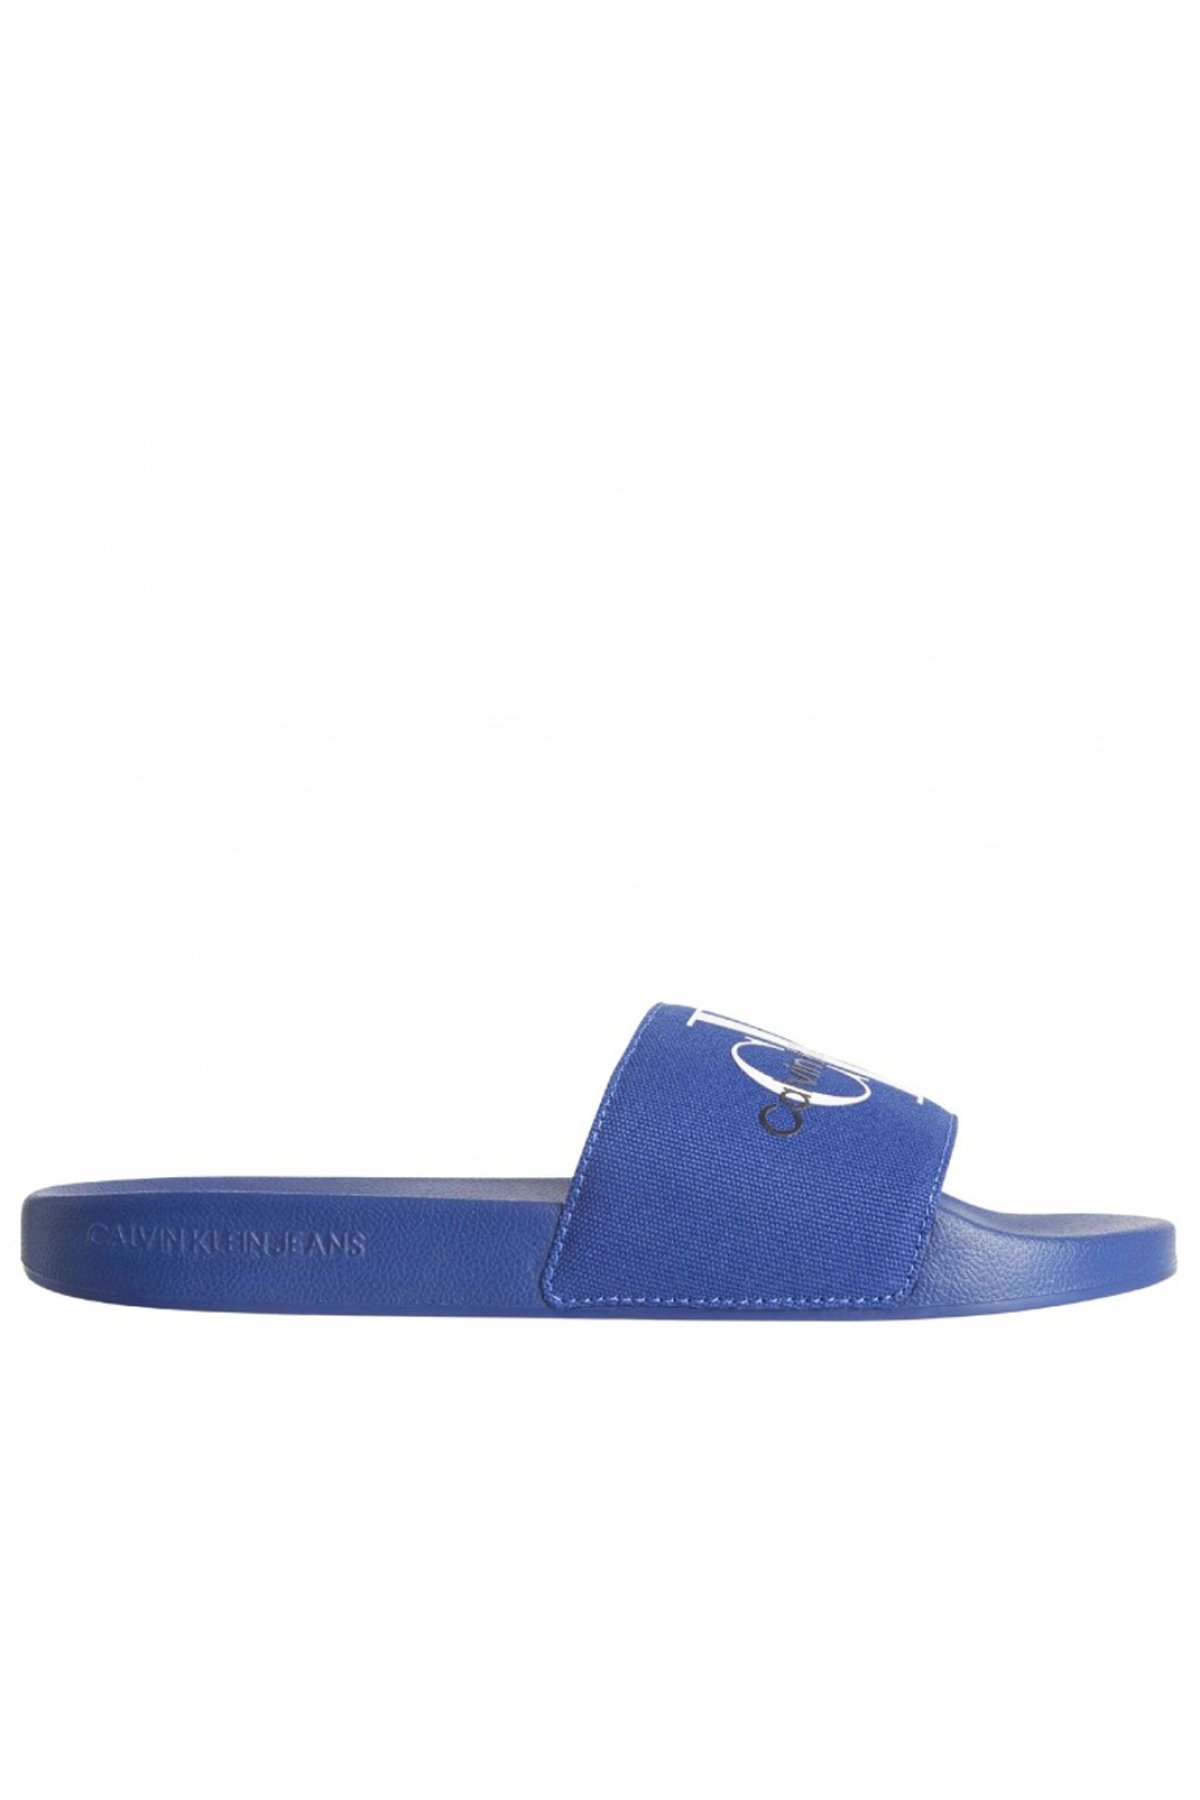 Calvin Klein YM0YM00061 pantofle modré